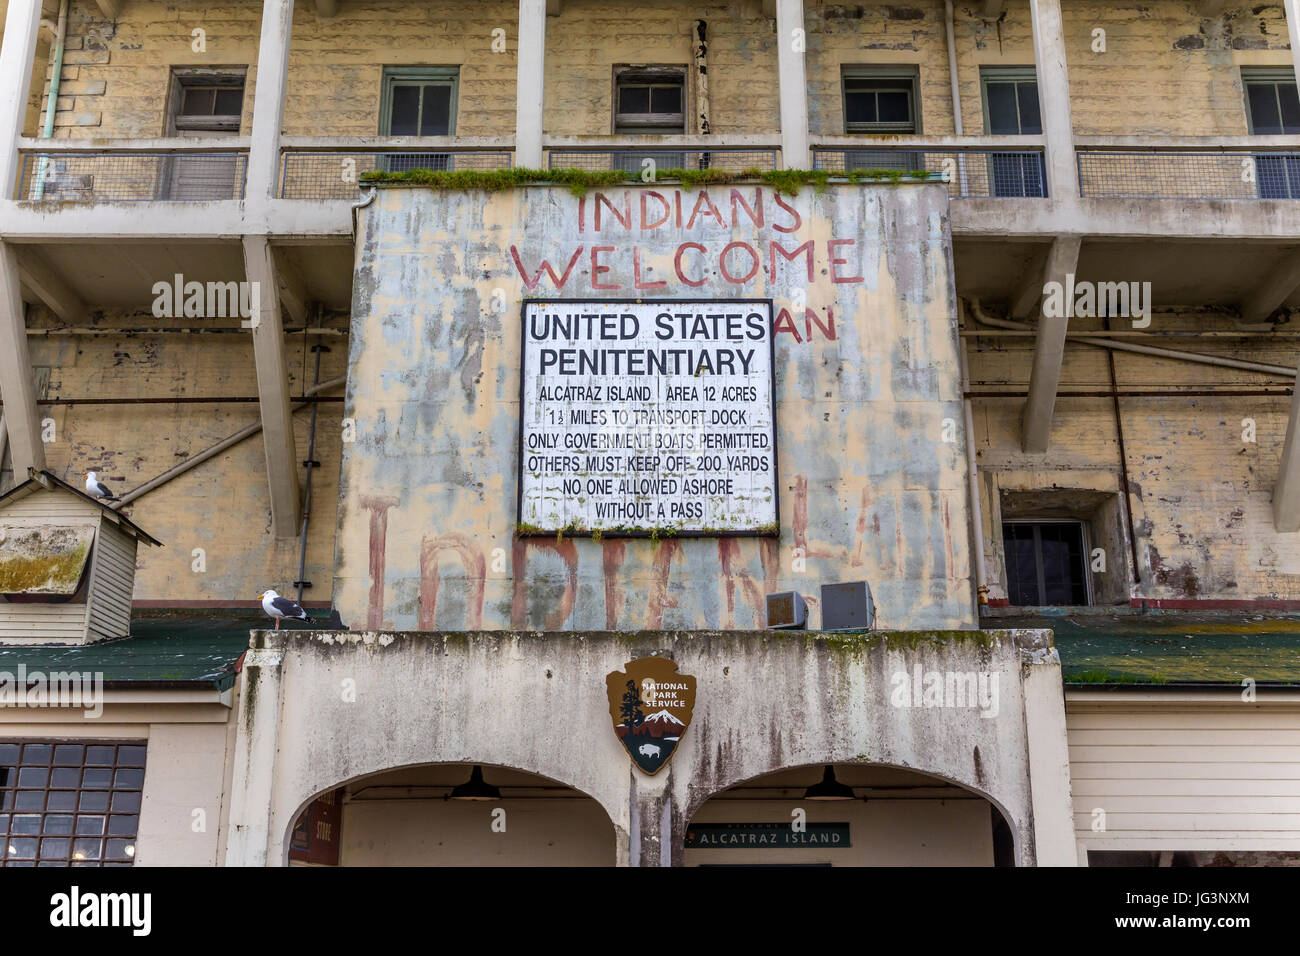 American Indian occupation, Alcatraz Prison, Alcatraz Island, San Francisco Bay, San Francisco, California, United States, North America Stock Photo